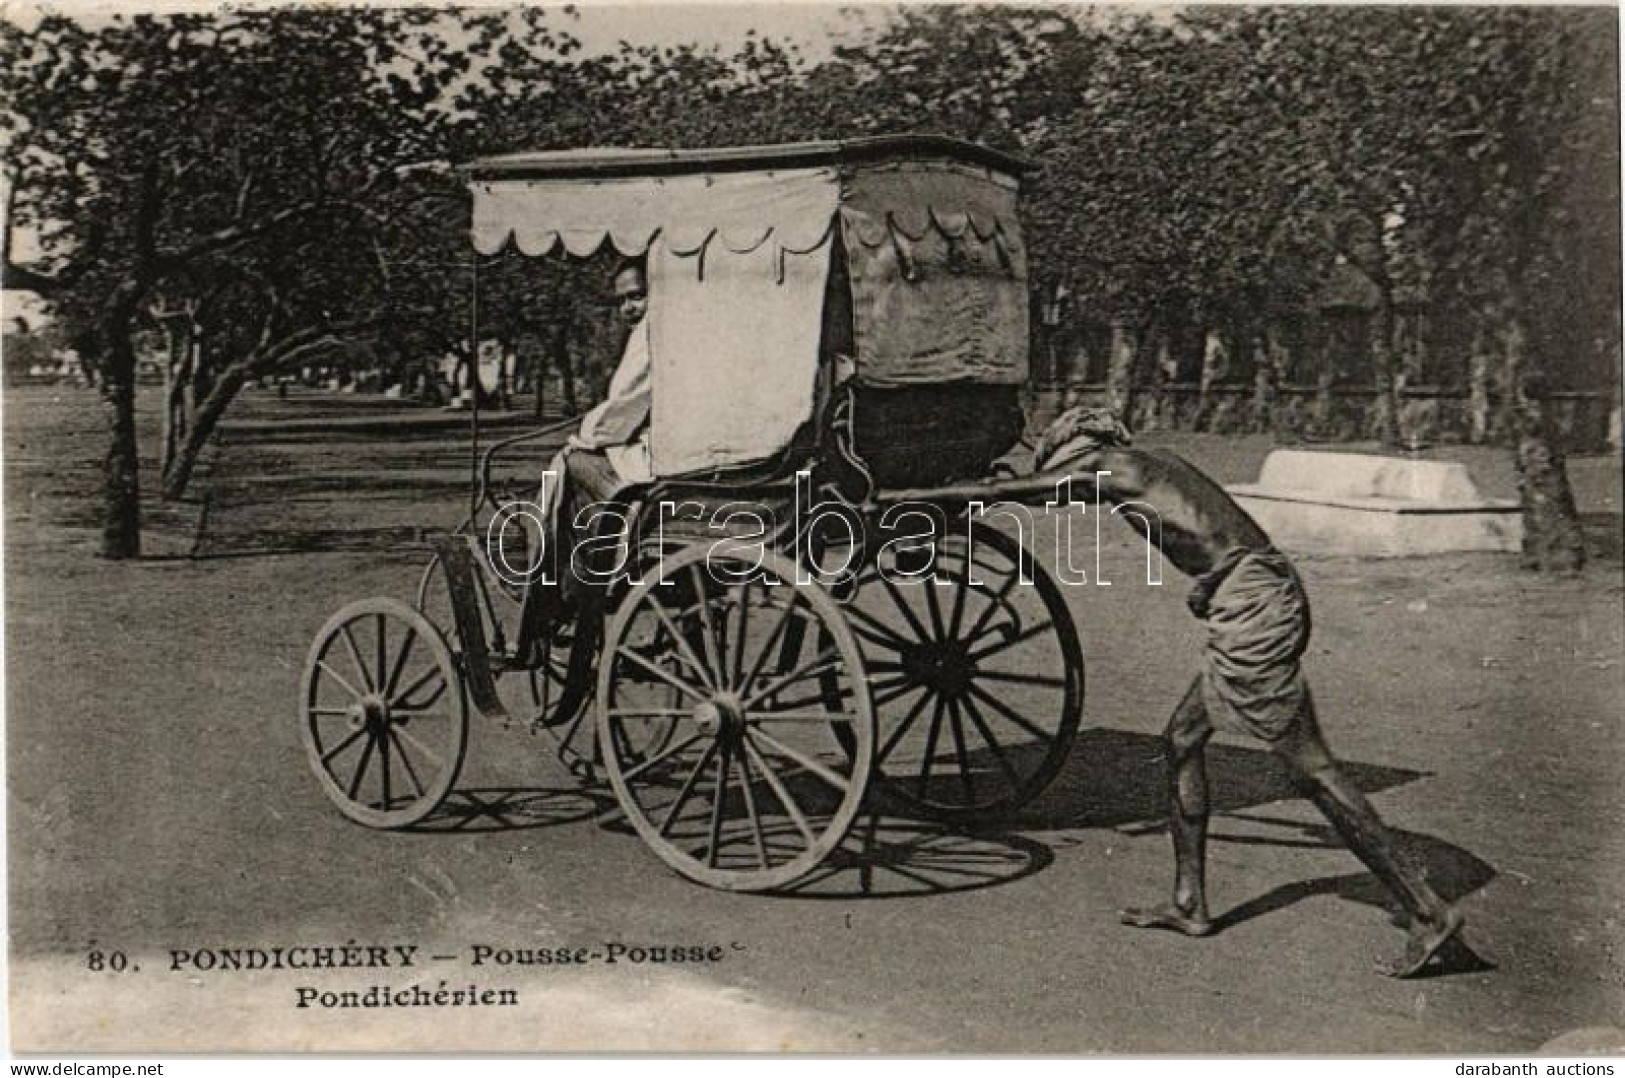 ** T2 Puducherry, Pondichéry; Pousse-Pousse Pondichérien / Rickshaw - Unclassified